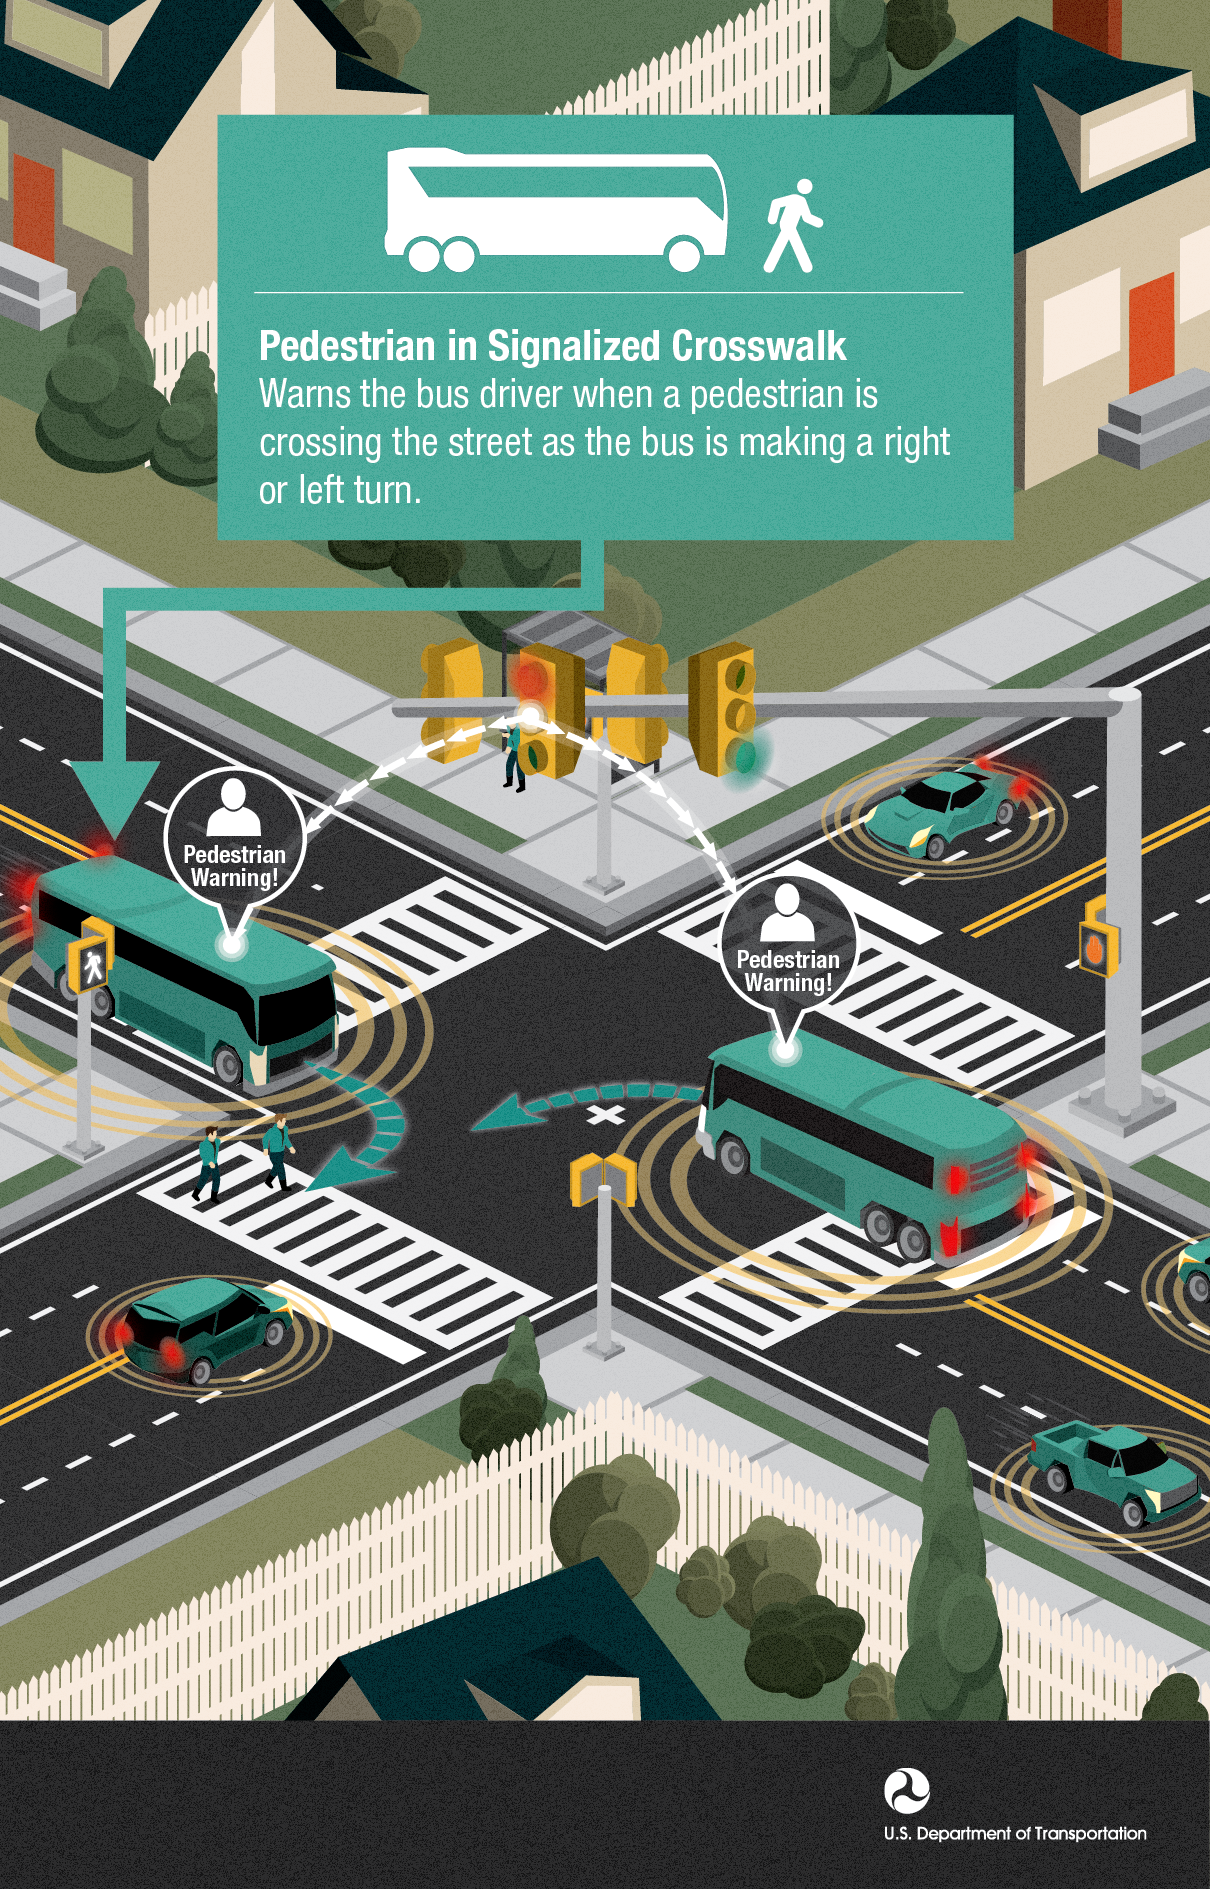 images/USDOT_2014_Infographs/PedestrianSafety/CV_PedCrossing_090413.png